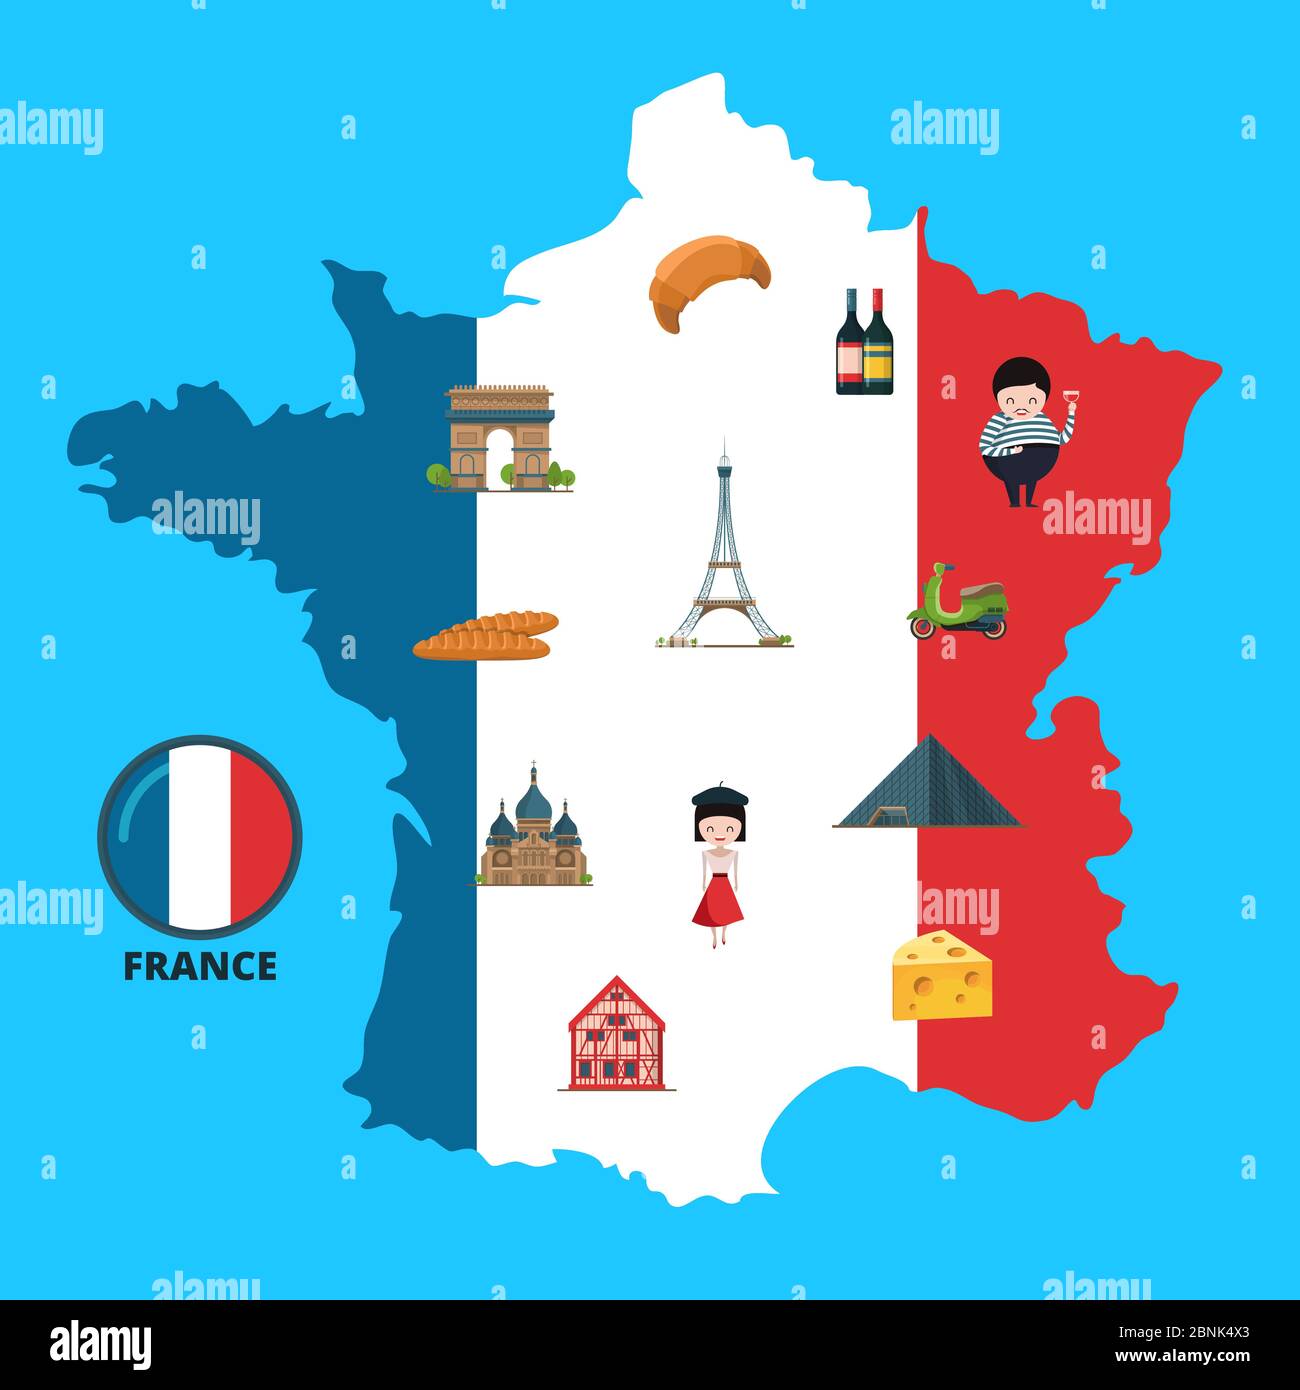 Images vectorielles de France sur l'illustration de la carte de France Illustration de Vecteur